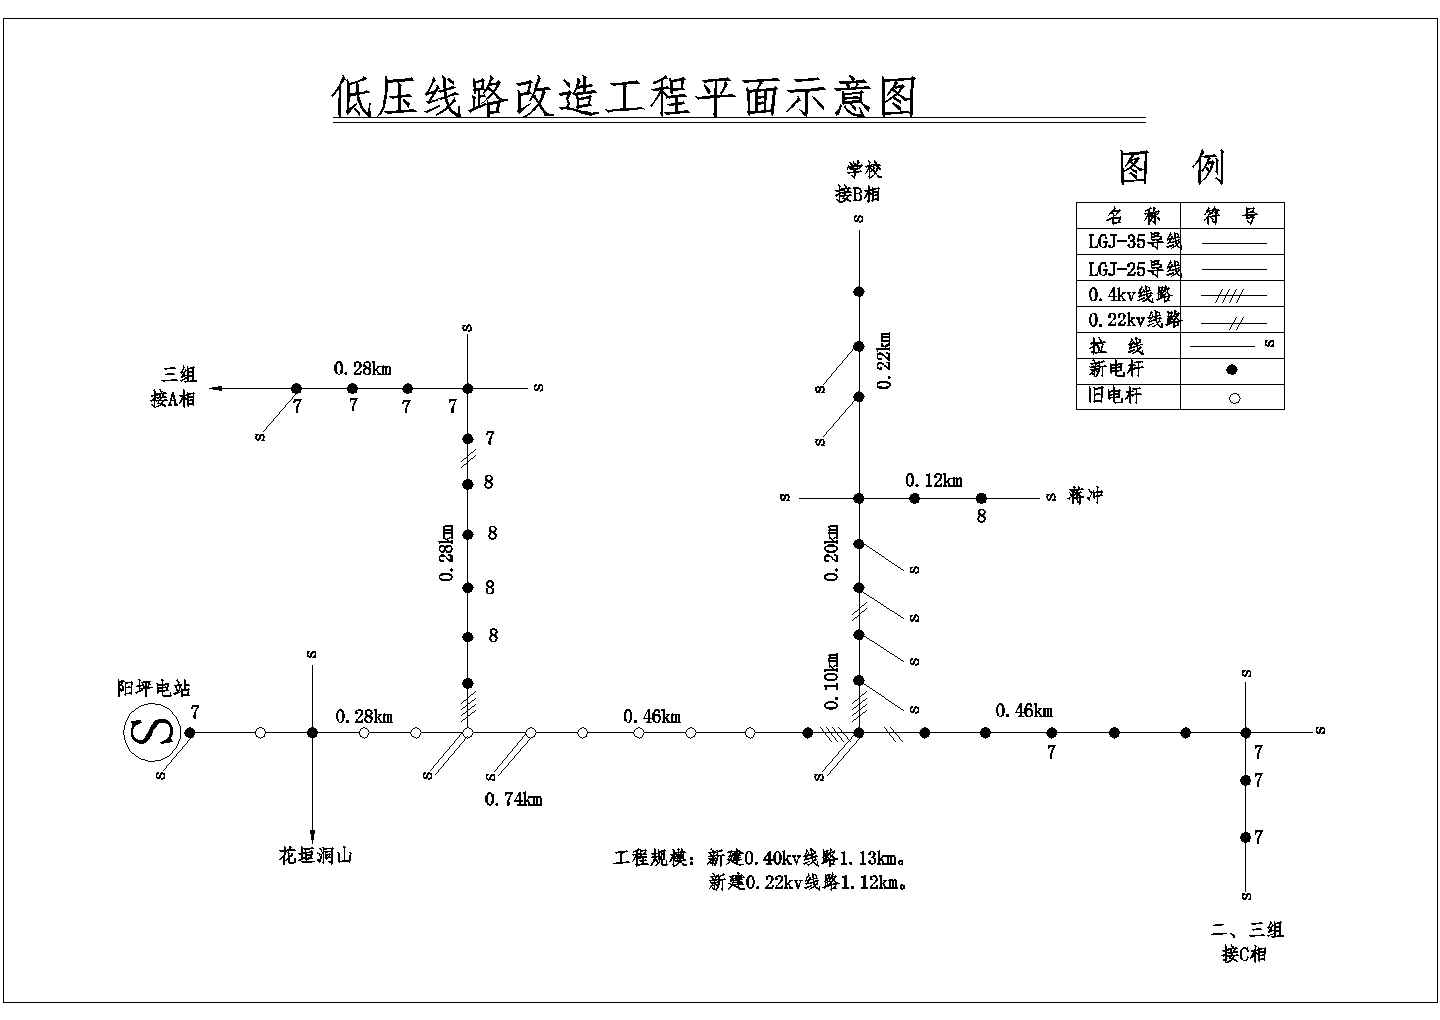 【安徽省】低压线路改造工程平面示意图